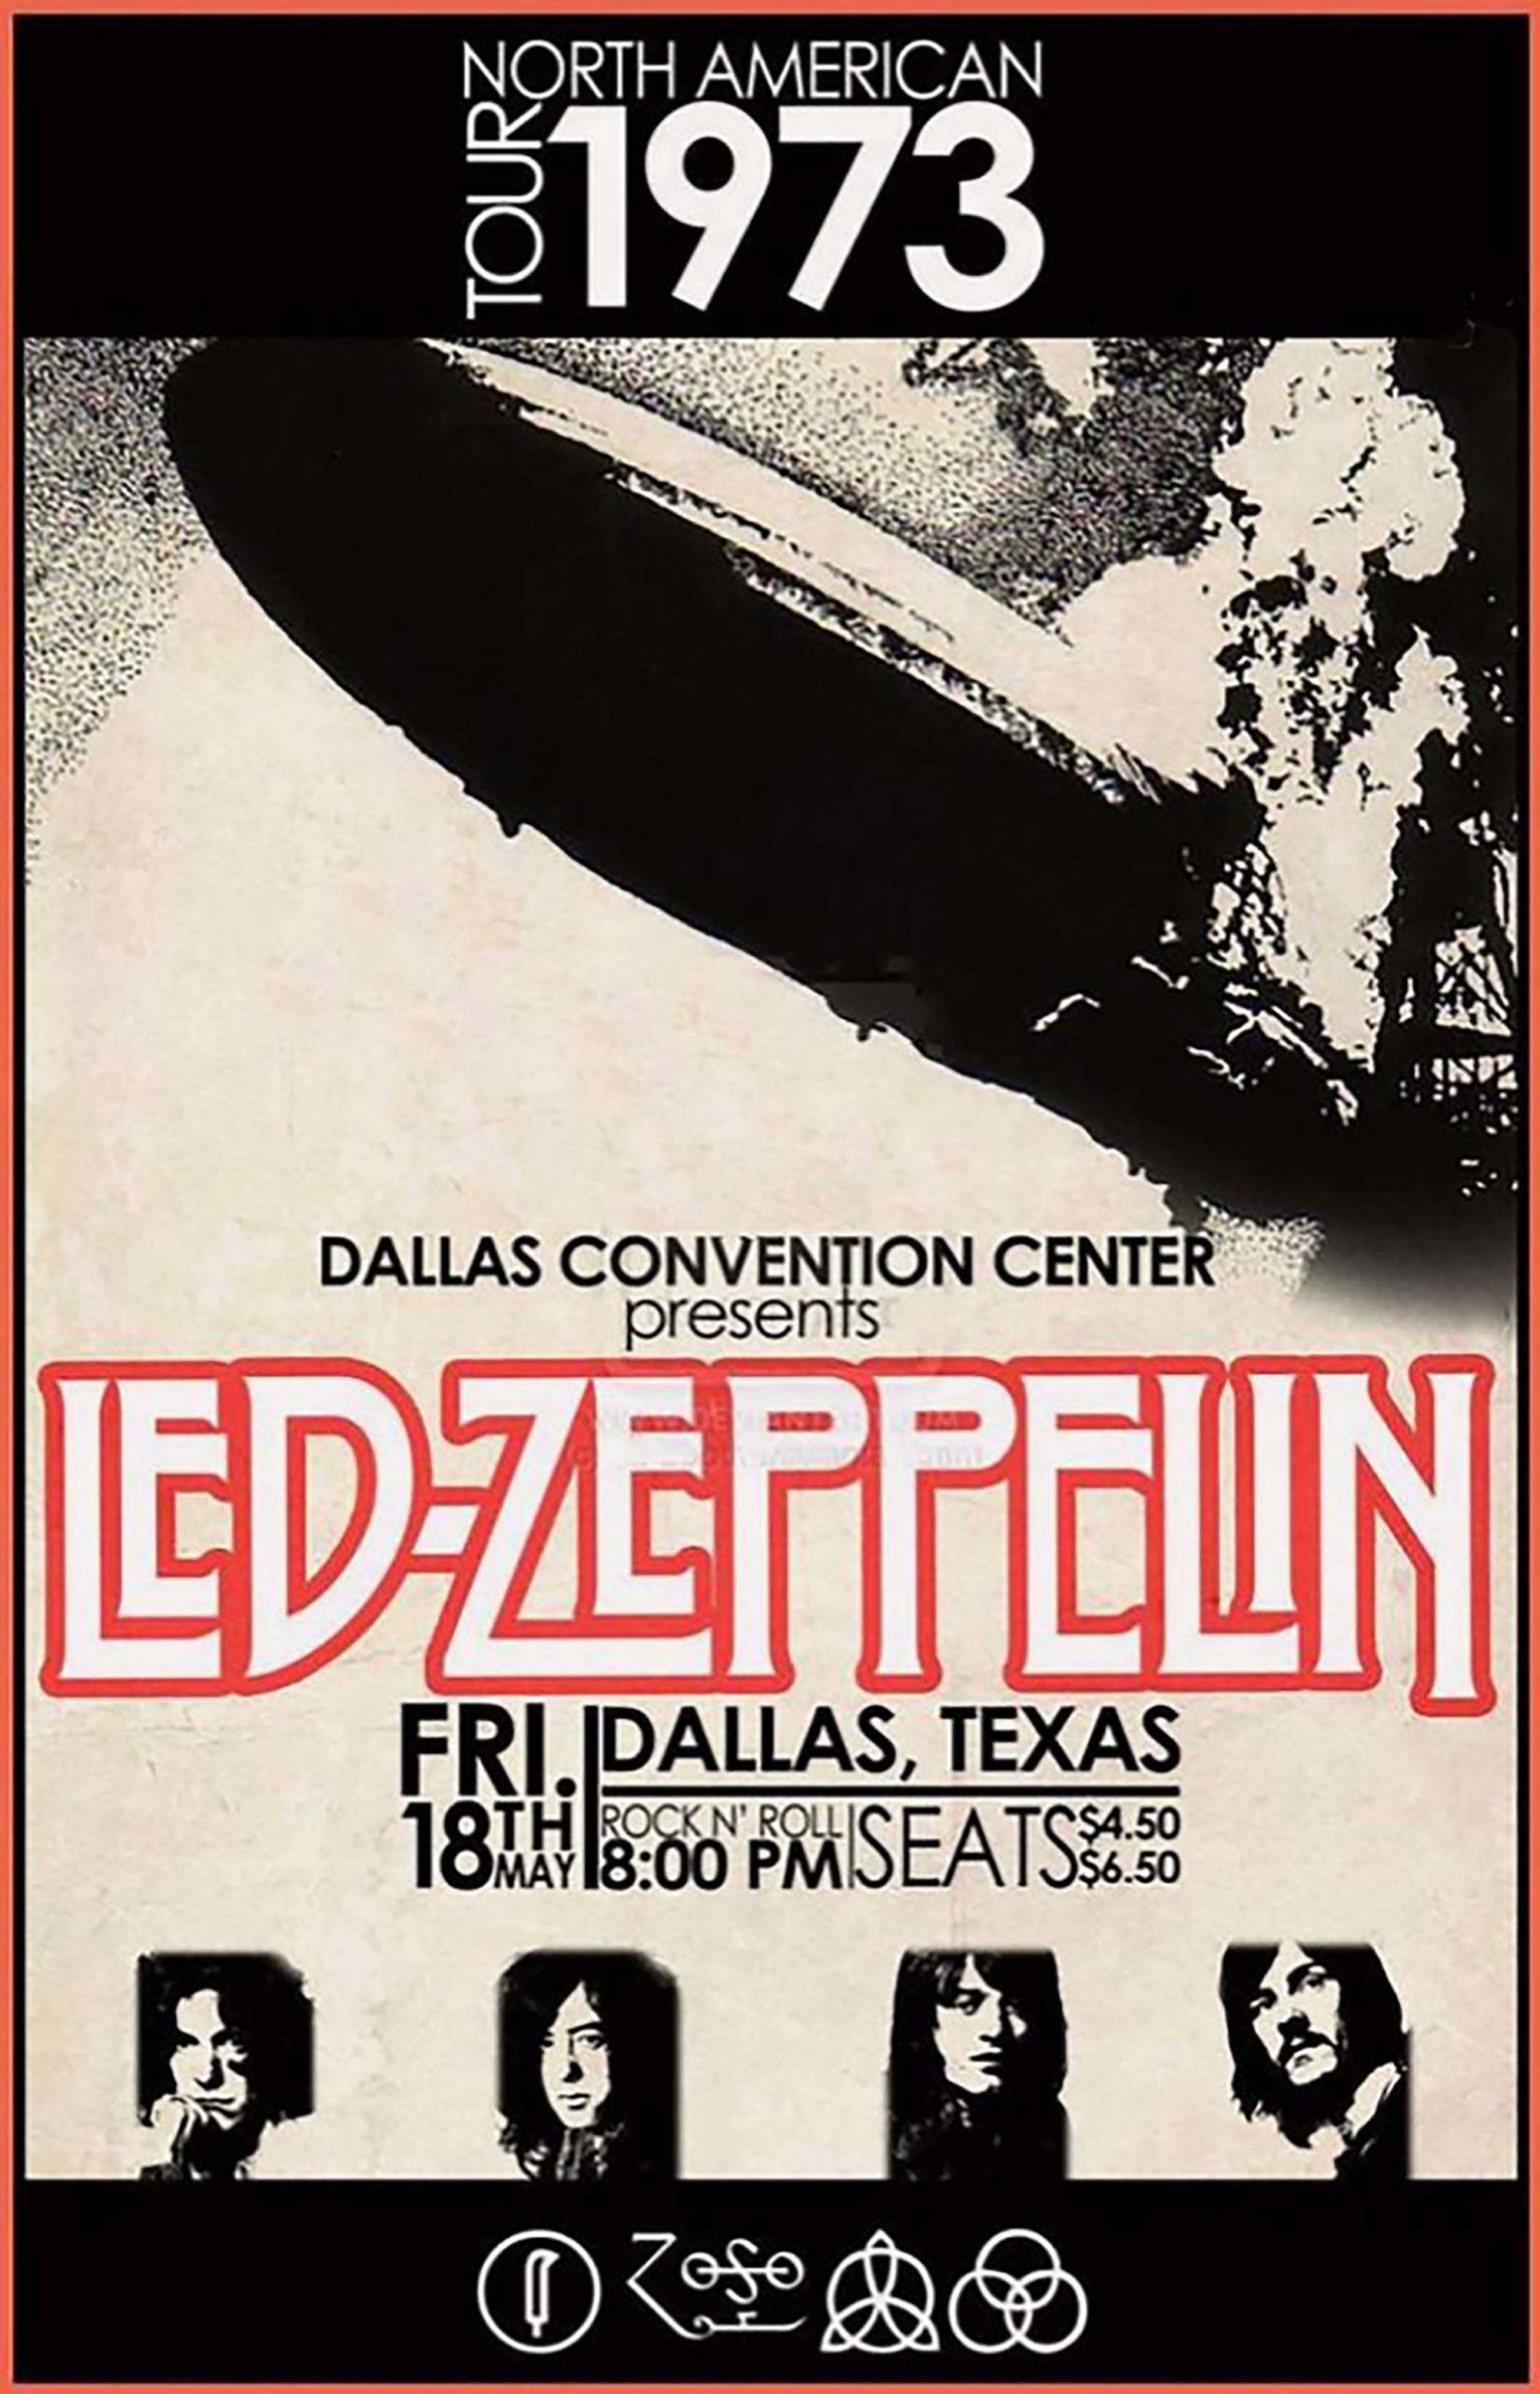 Led Zeppelin poster